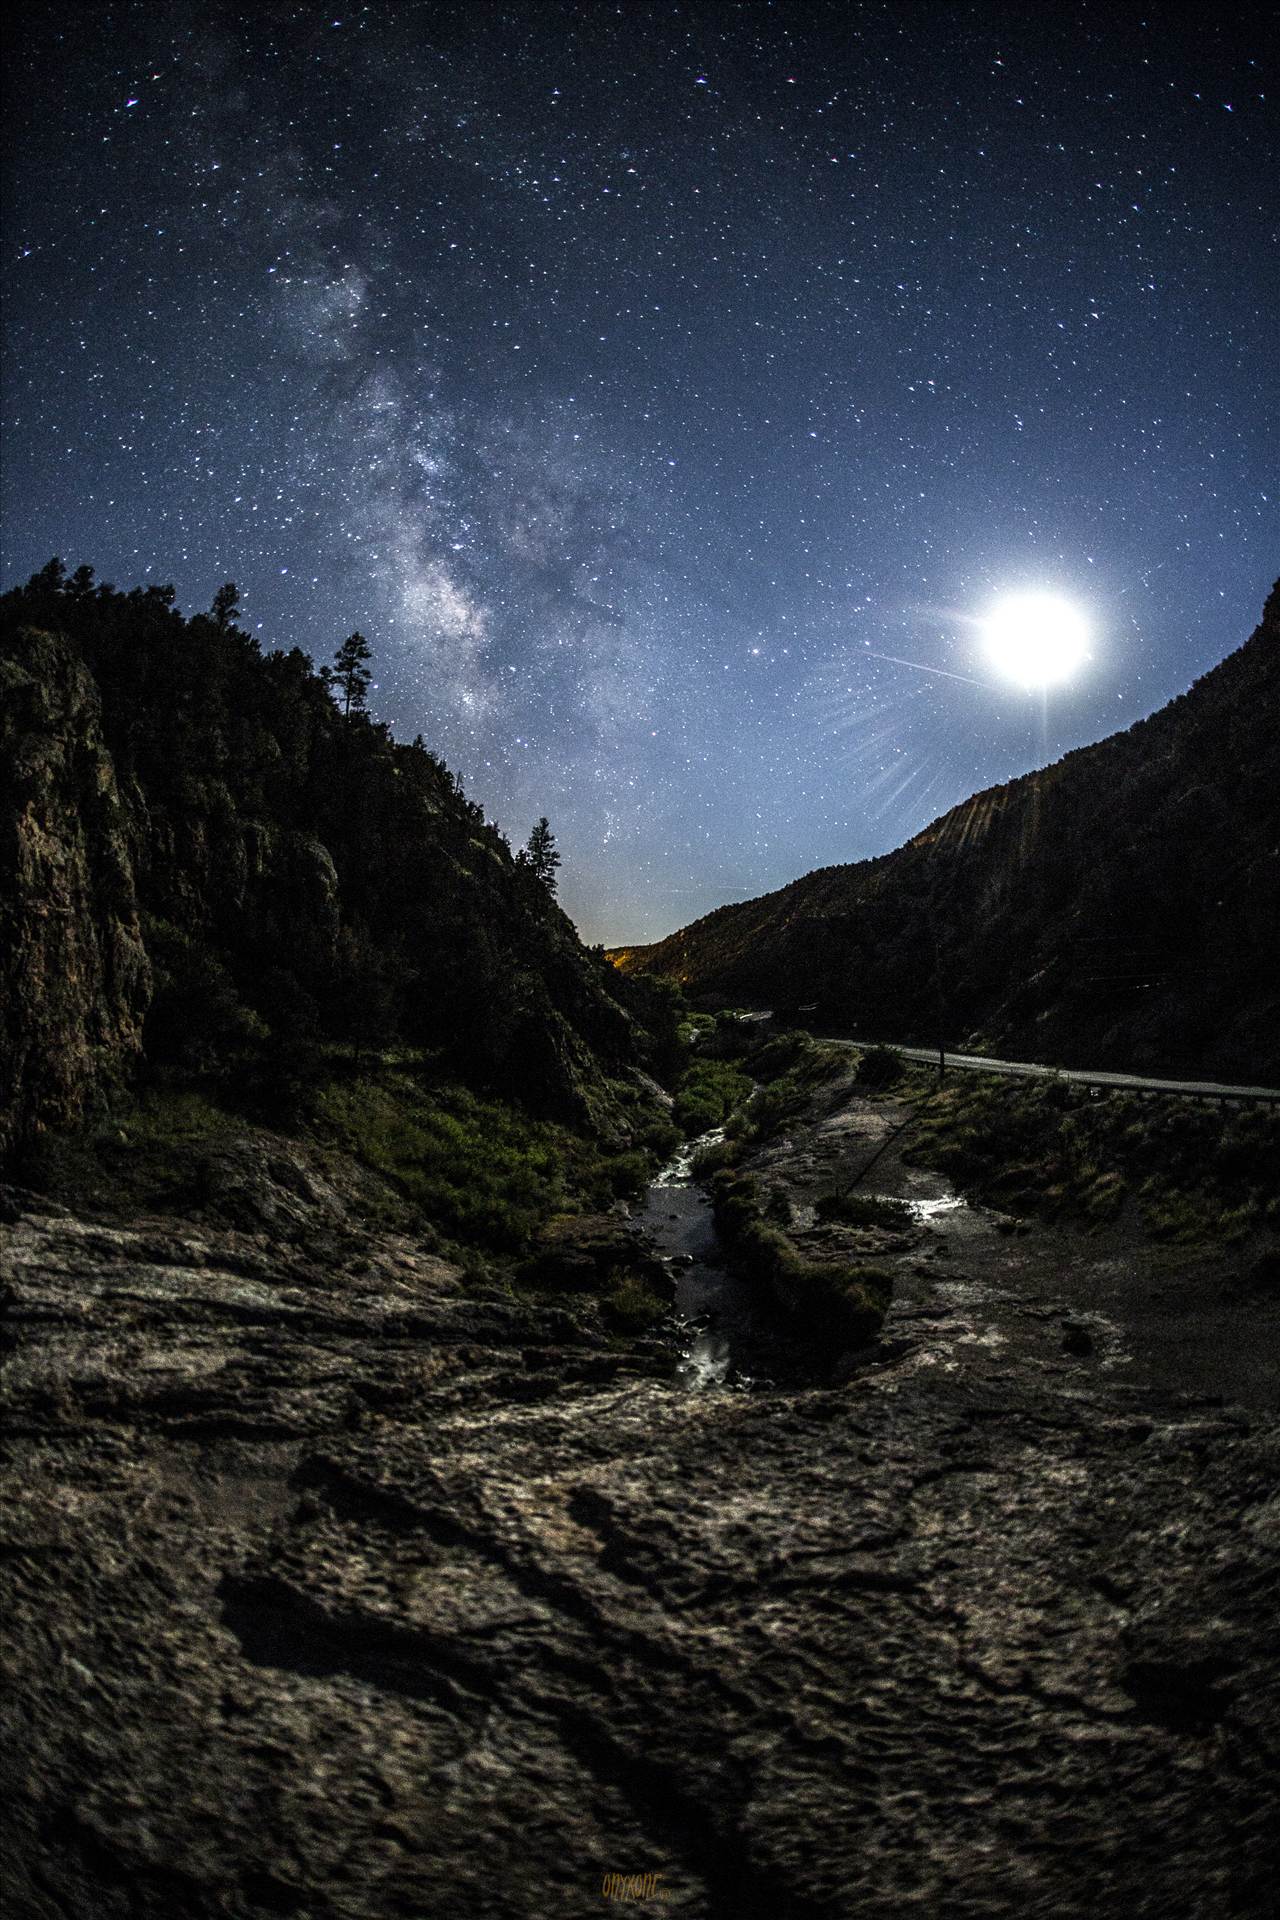 Soda Dam And Milky Way.jpg  by Joey Onyxone Sandoval